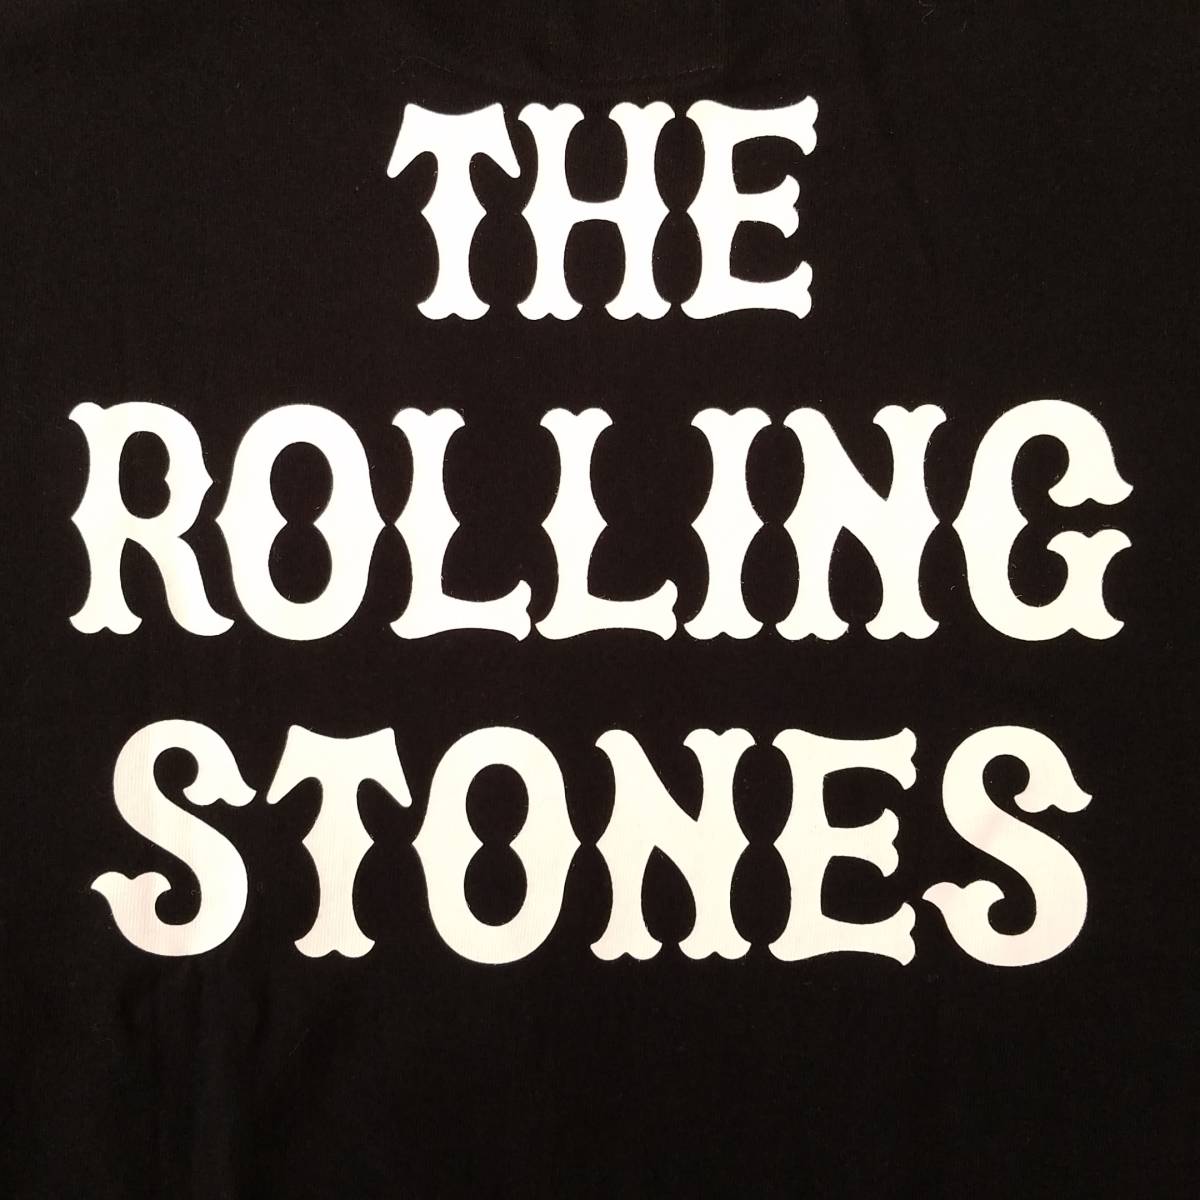  очарование. частота T специальный выпуск! новый товар [The Rolling Stones( The * low кольцо Stone z) × GIANTS(... человек армия )] короткий рукав футболка черный XL цена Y4800+ налог 